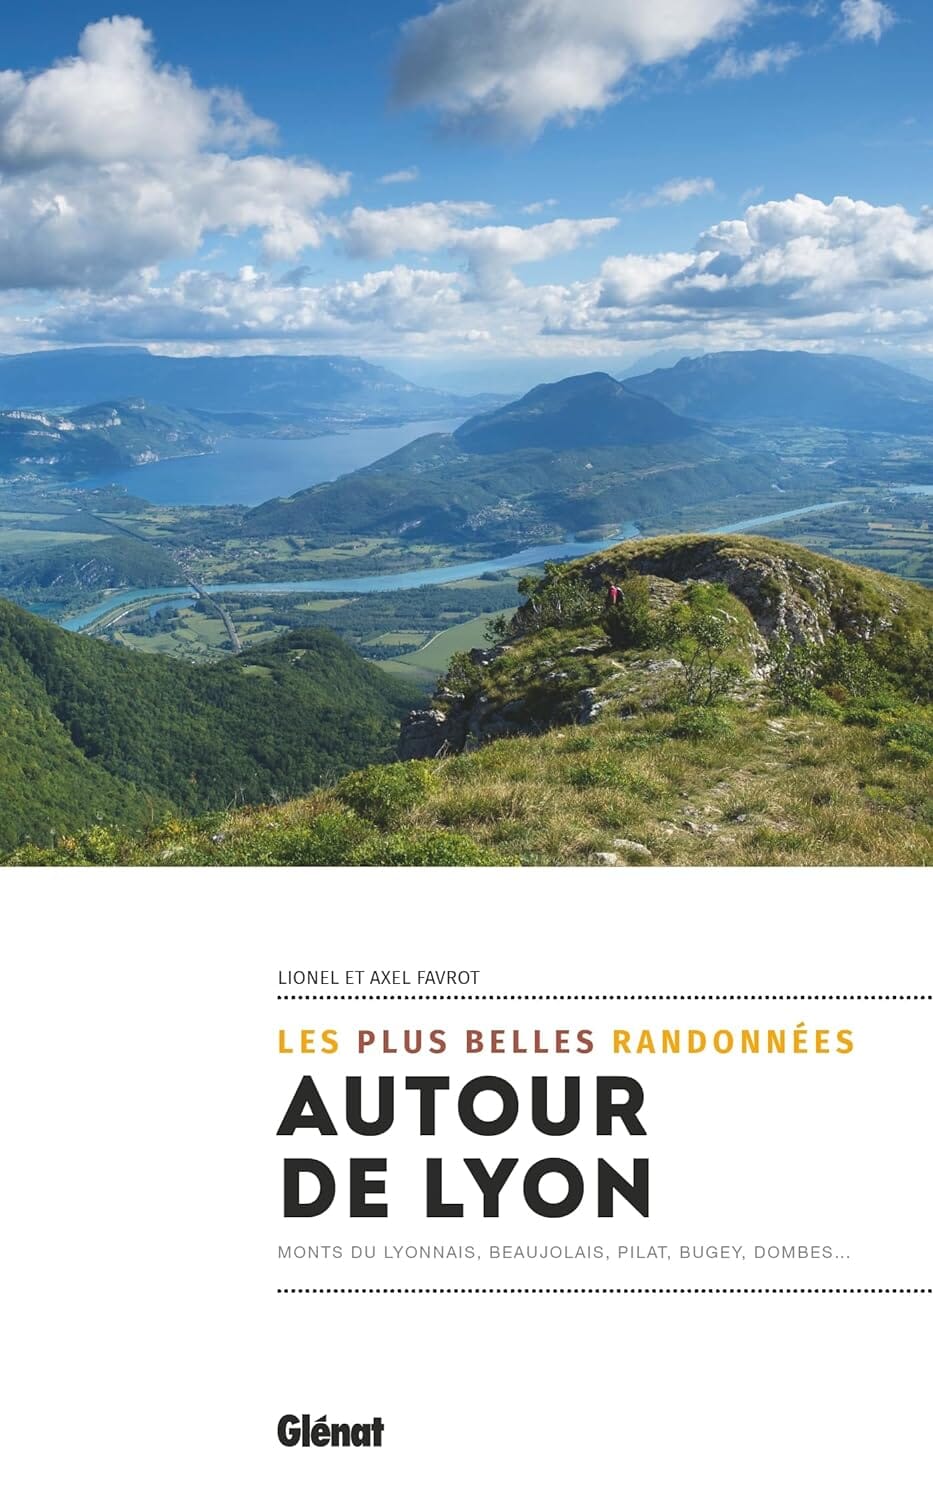 Guide de randonnées - Autour de Lyon, les plus belles randonnées | Glénat guide de randonnée Glénat 